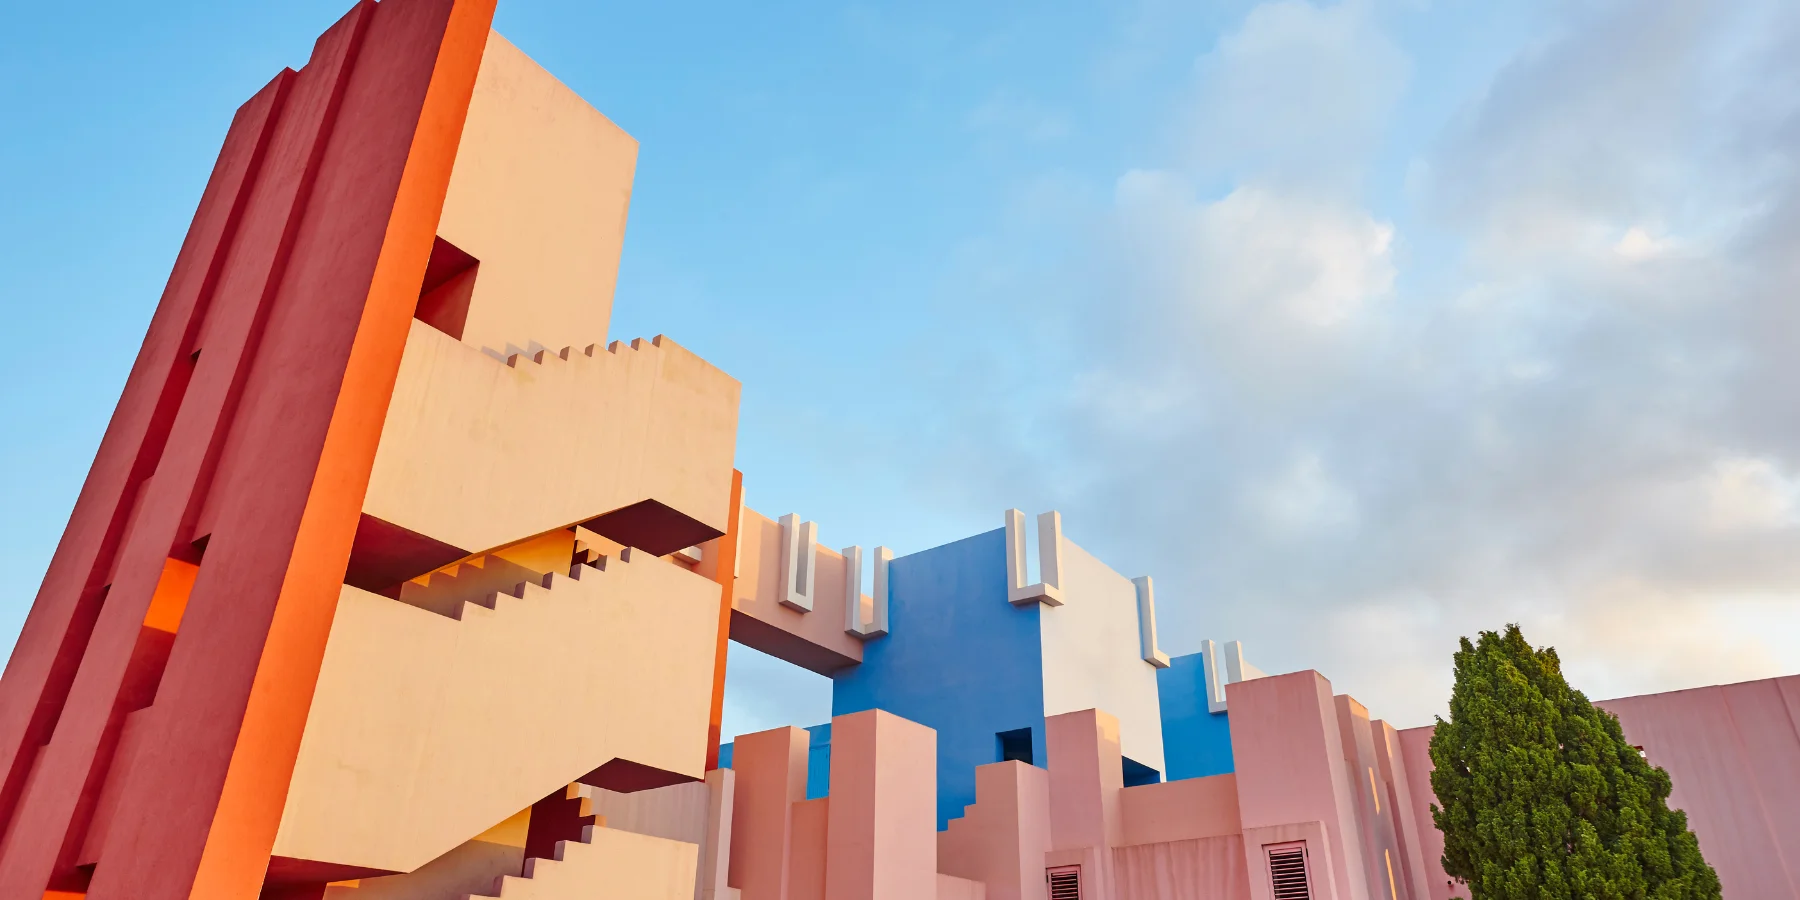 La Muralla Roja, Calpe: Postmodern Architecture in the Mediterranean